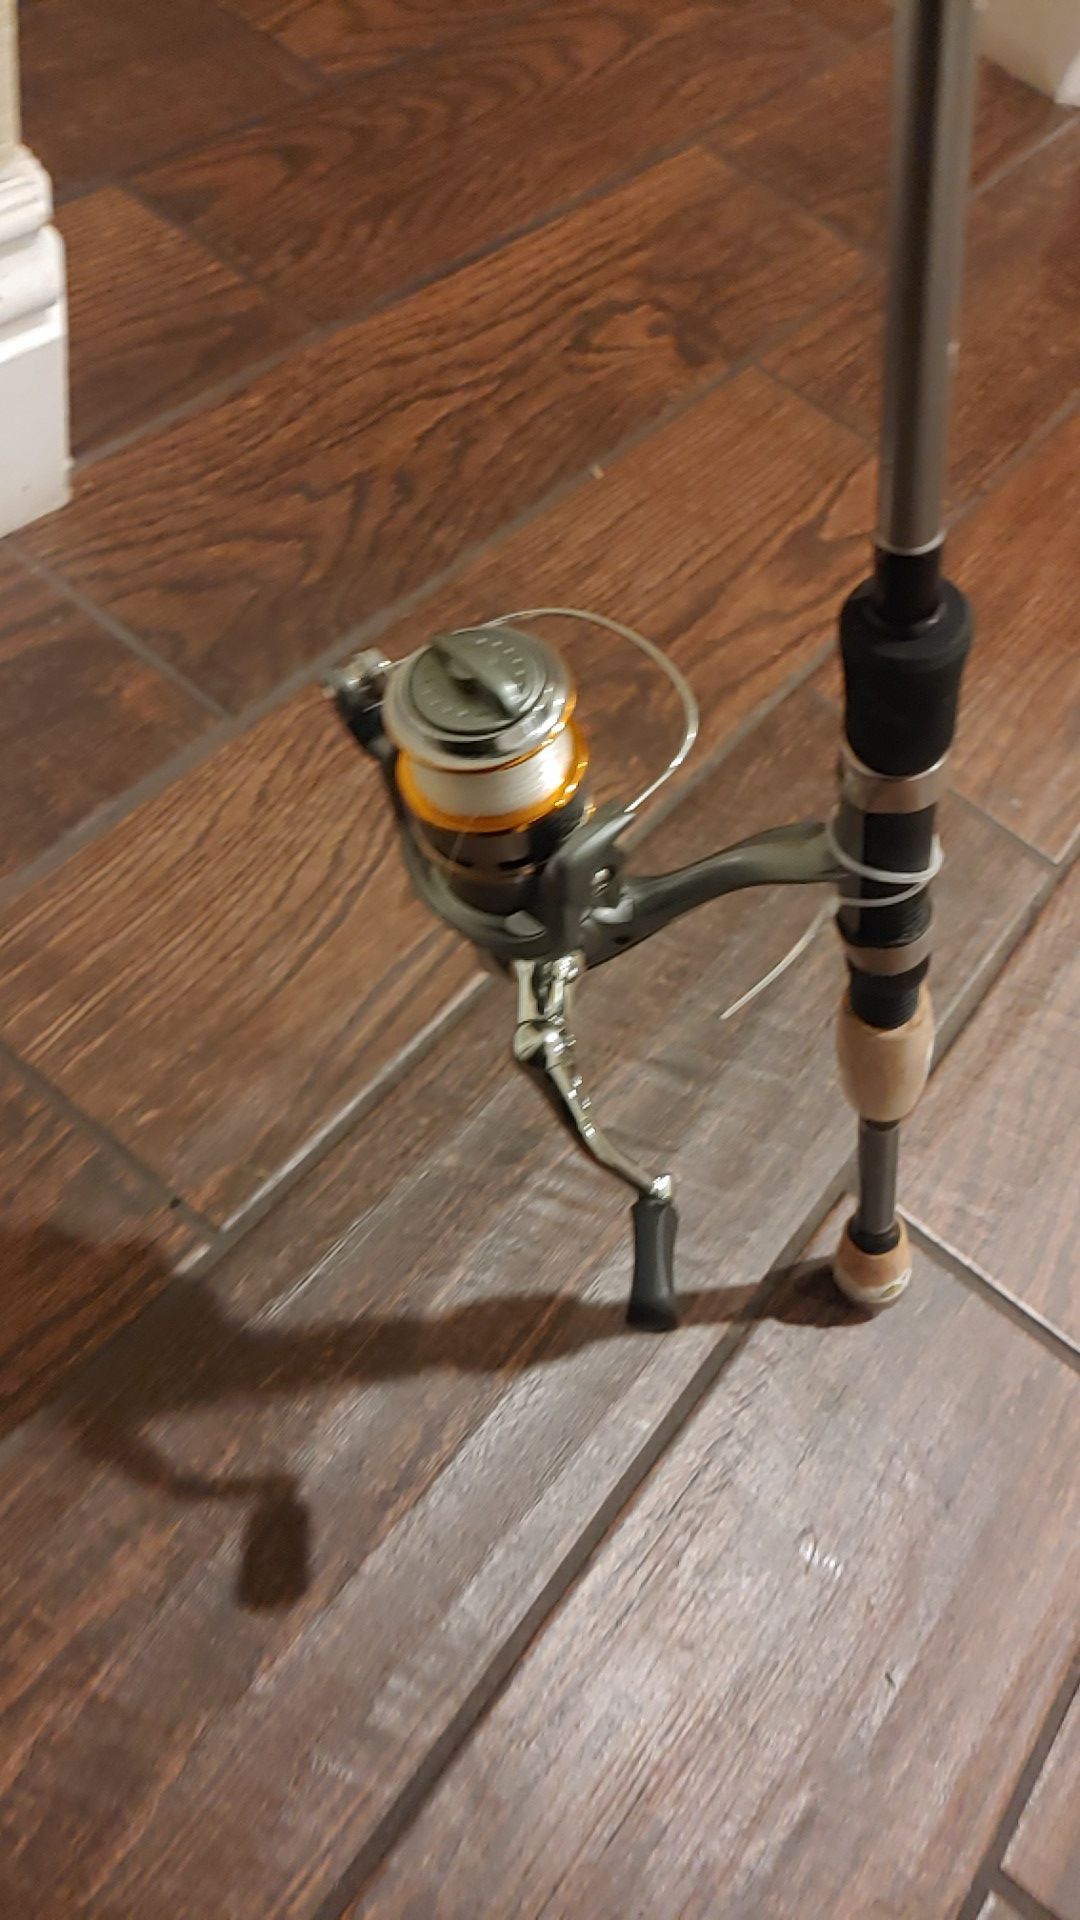 Okuma fishing rod and reel